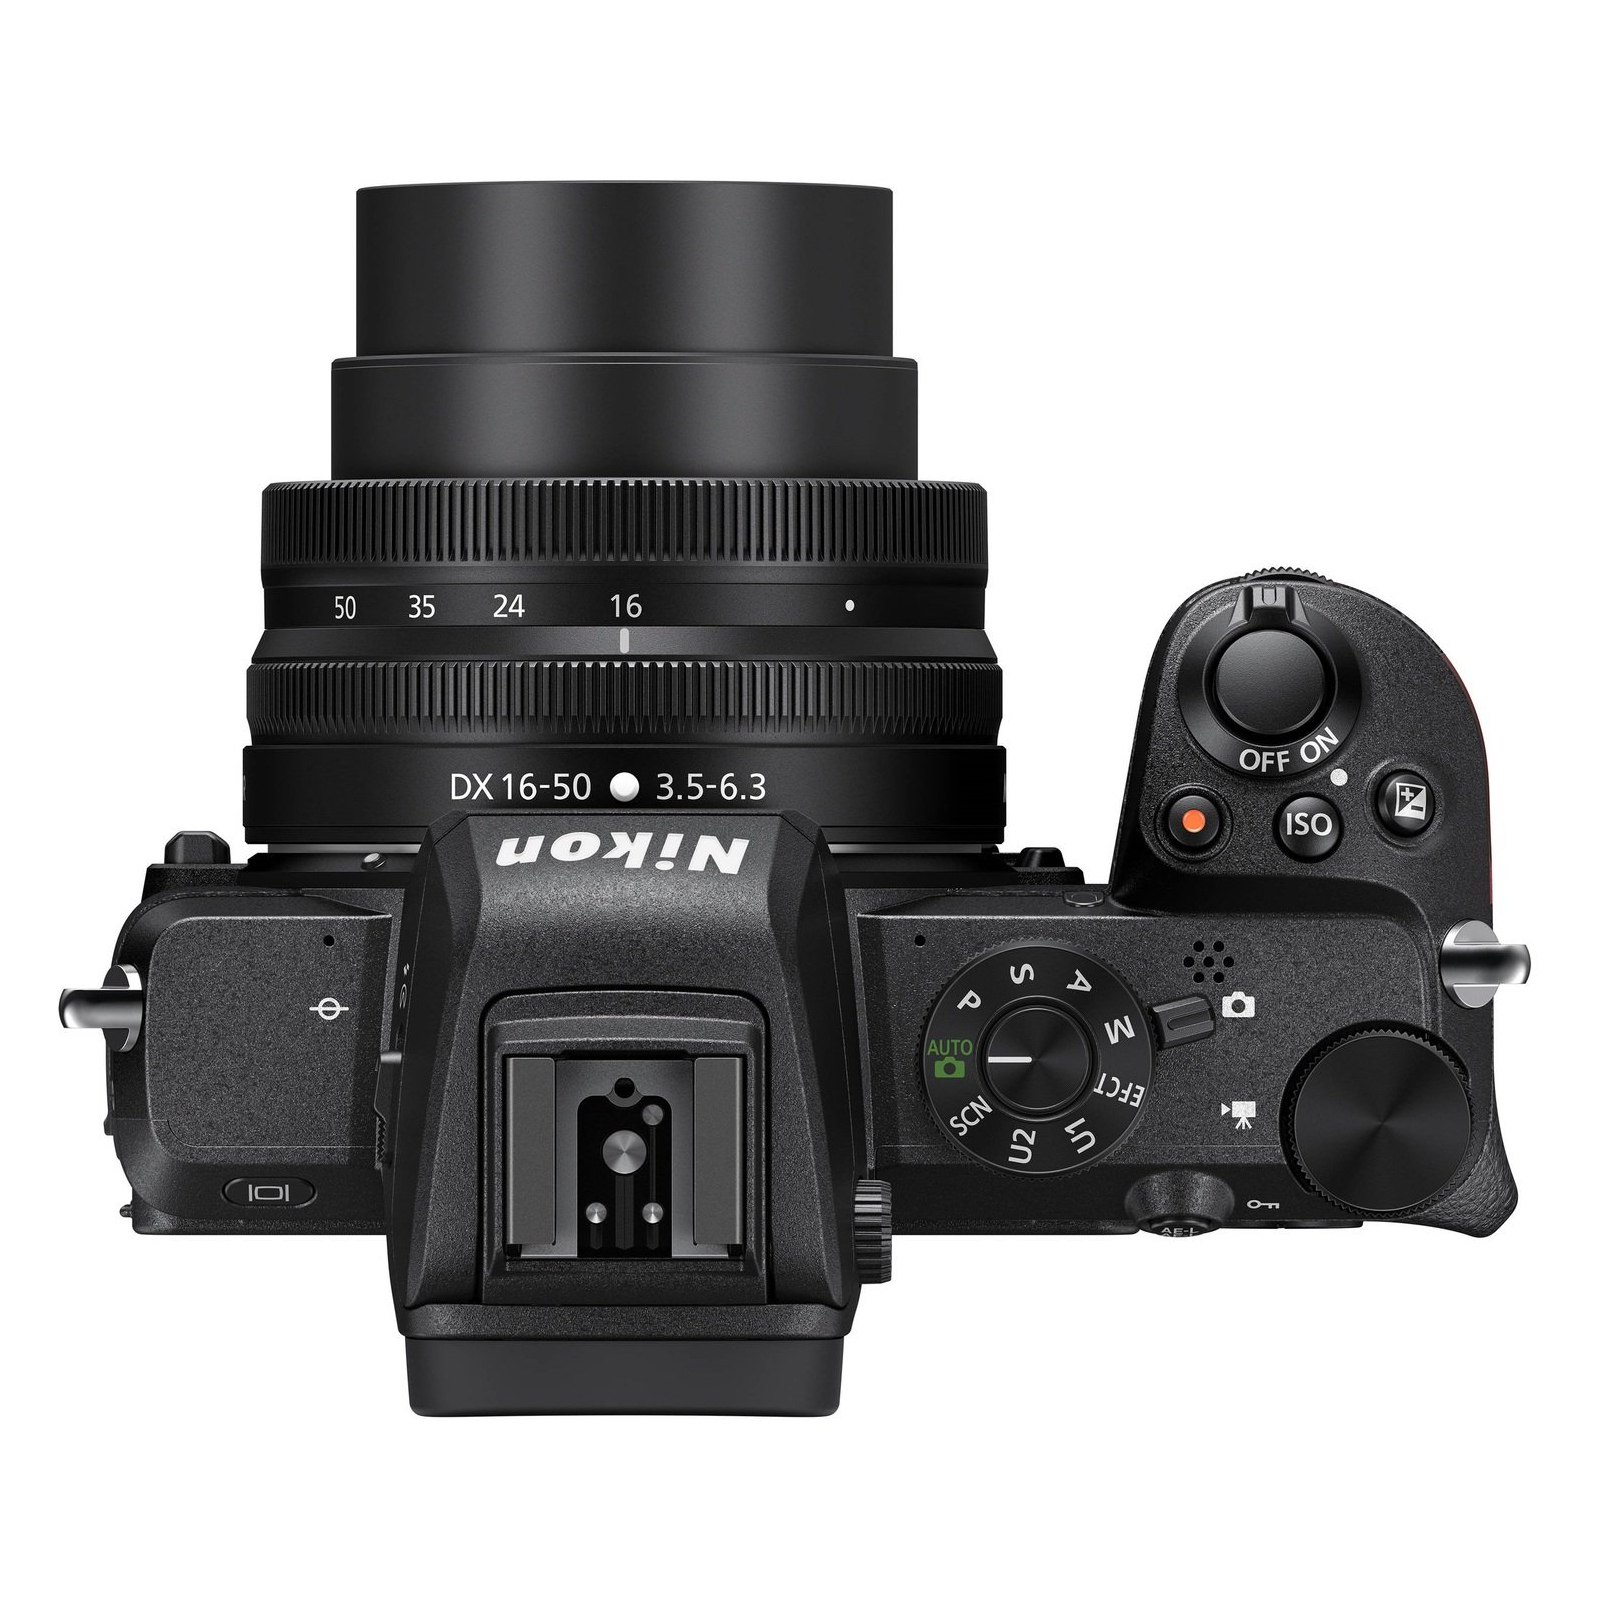 Цифровой фотоаппарат Nikon Z50 + 16-50 VR (VOA050K001) изображение 6